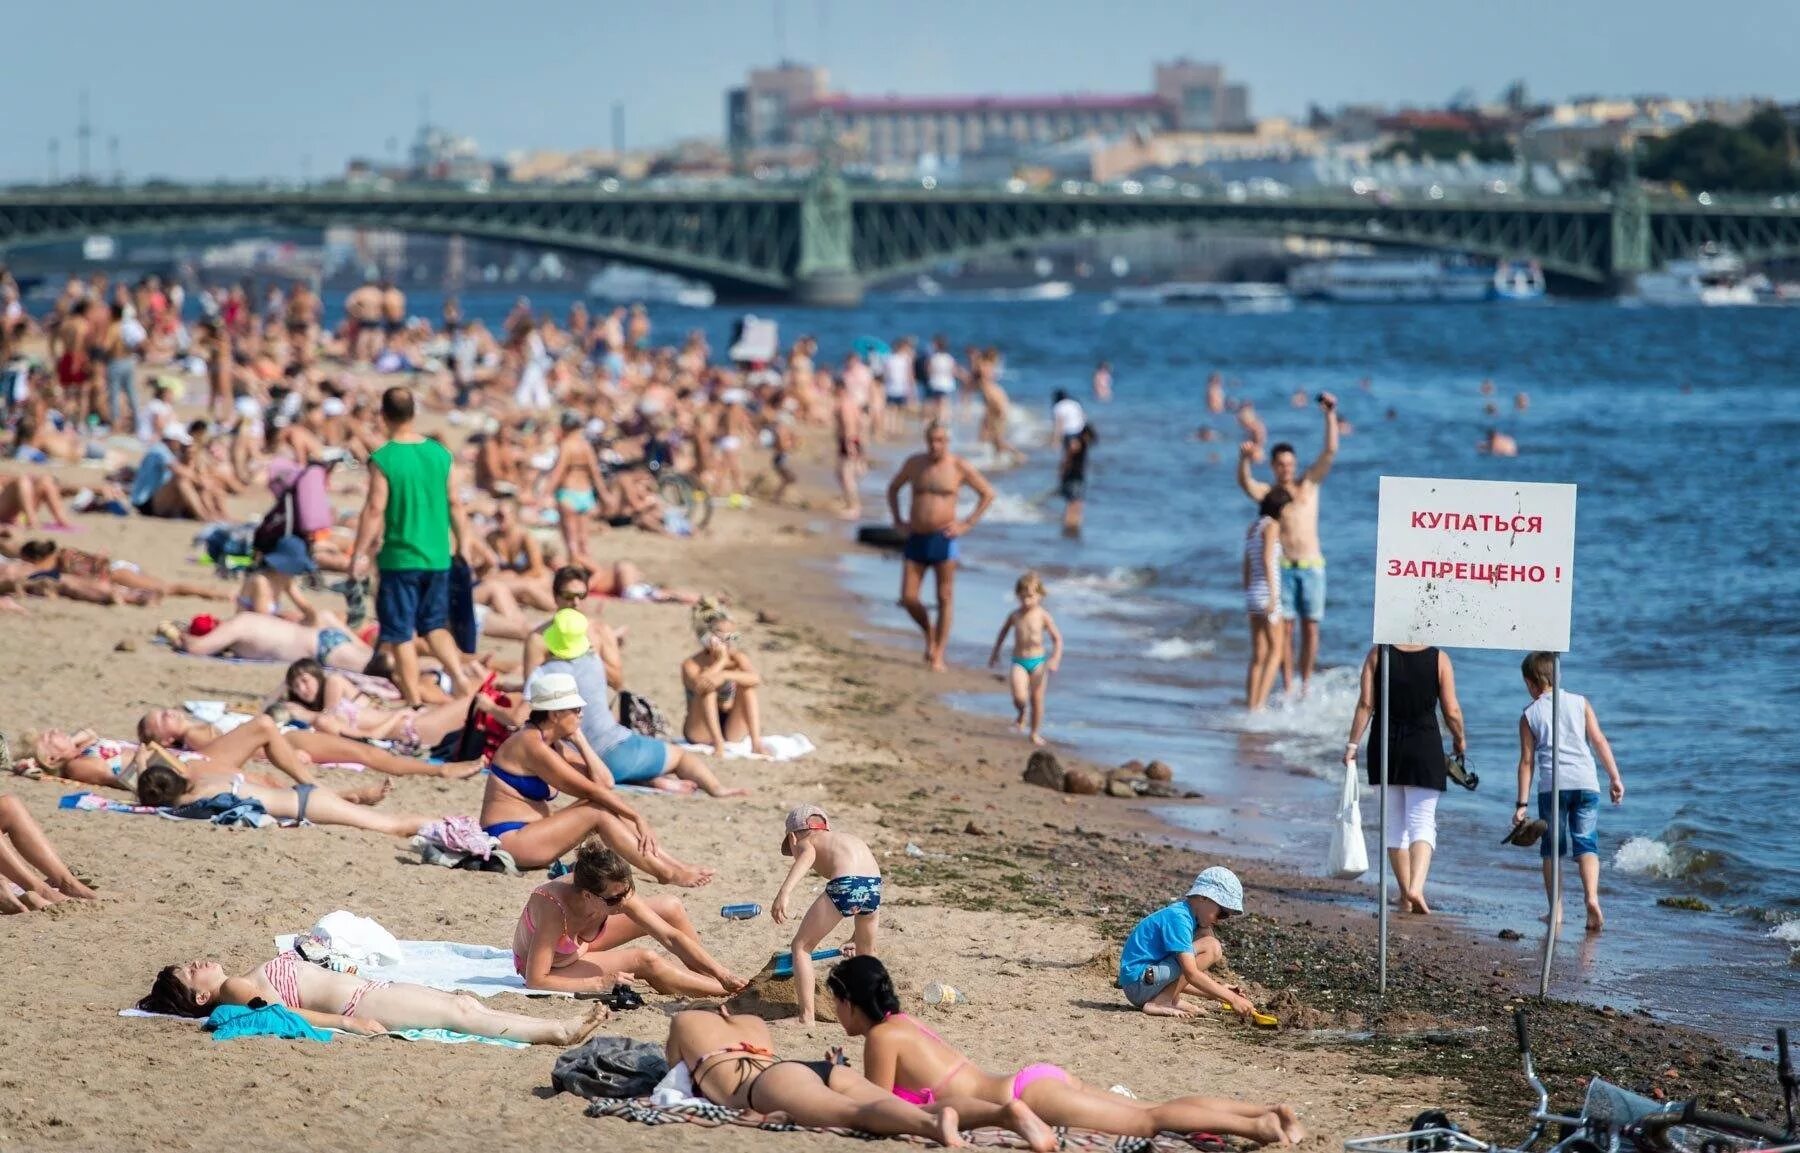 Сочи в июне можно ли купаться. Люди на пляже. Пляж с отдыхающими. Пляж Санкт-Петербург. Переполненные пляжи.